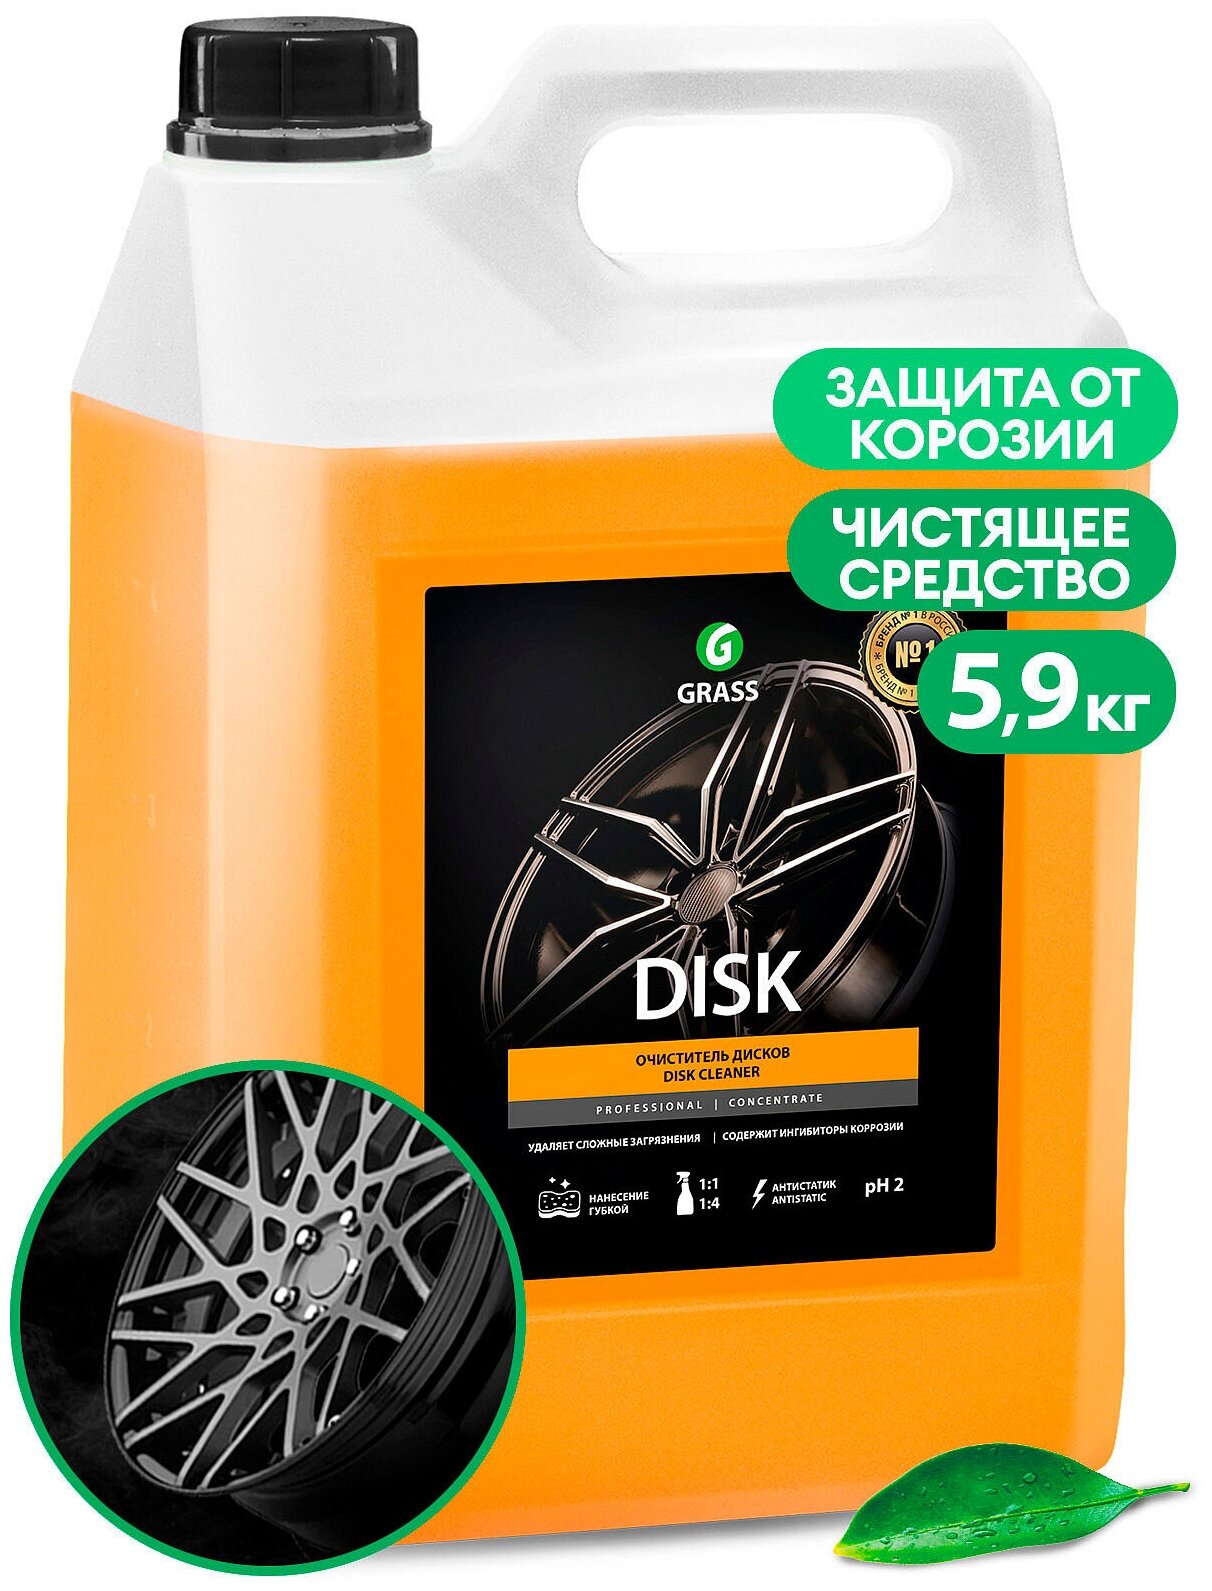 Очиститель Дисков Disk 59Кг Grass 125232 GraSS арт. 125232